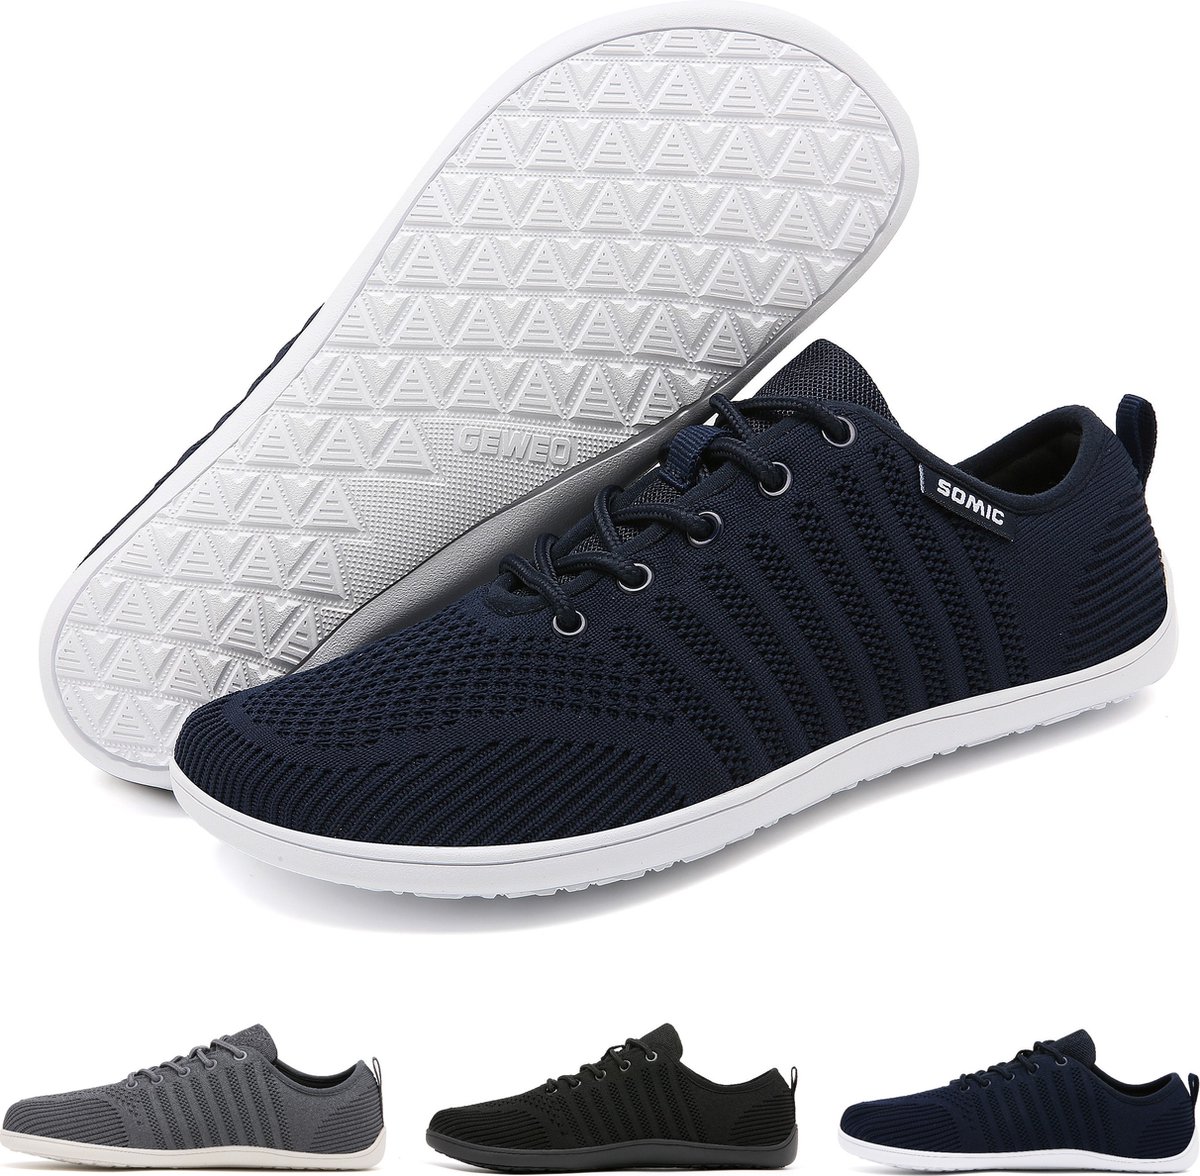 Somic Barefoot Schoenen - Sportschoenen Sneakers - Fitnessschoenen - Hardloopschoenen - Ademend Knit Textiel - Platte Zool - Blauw - Maat 44